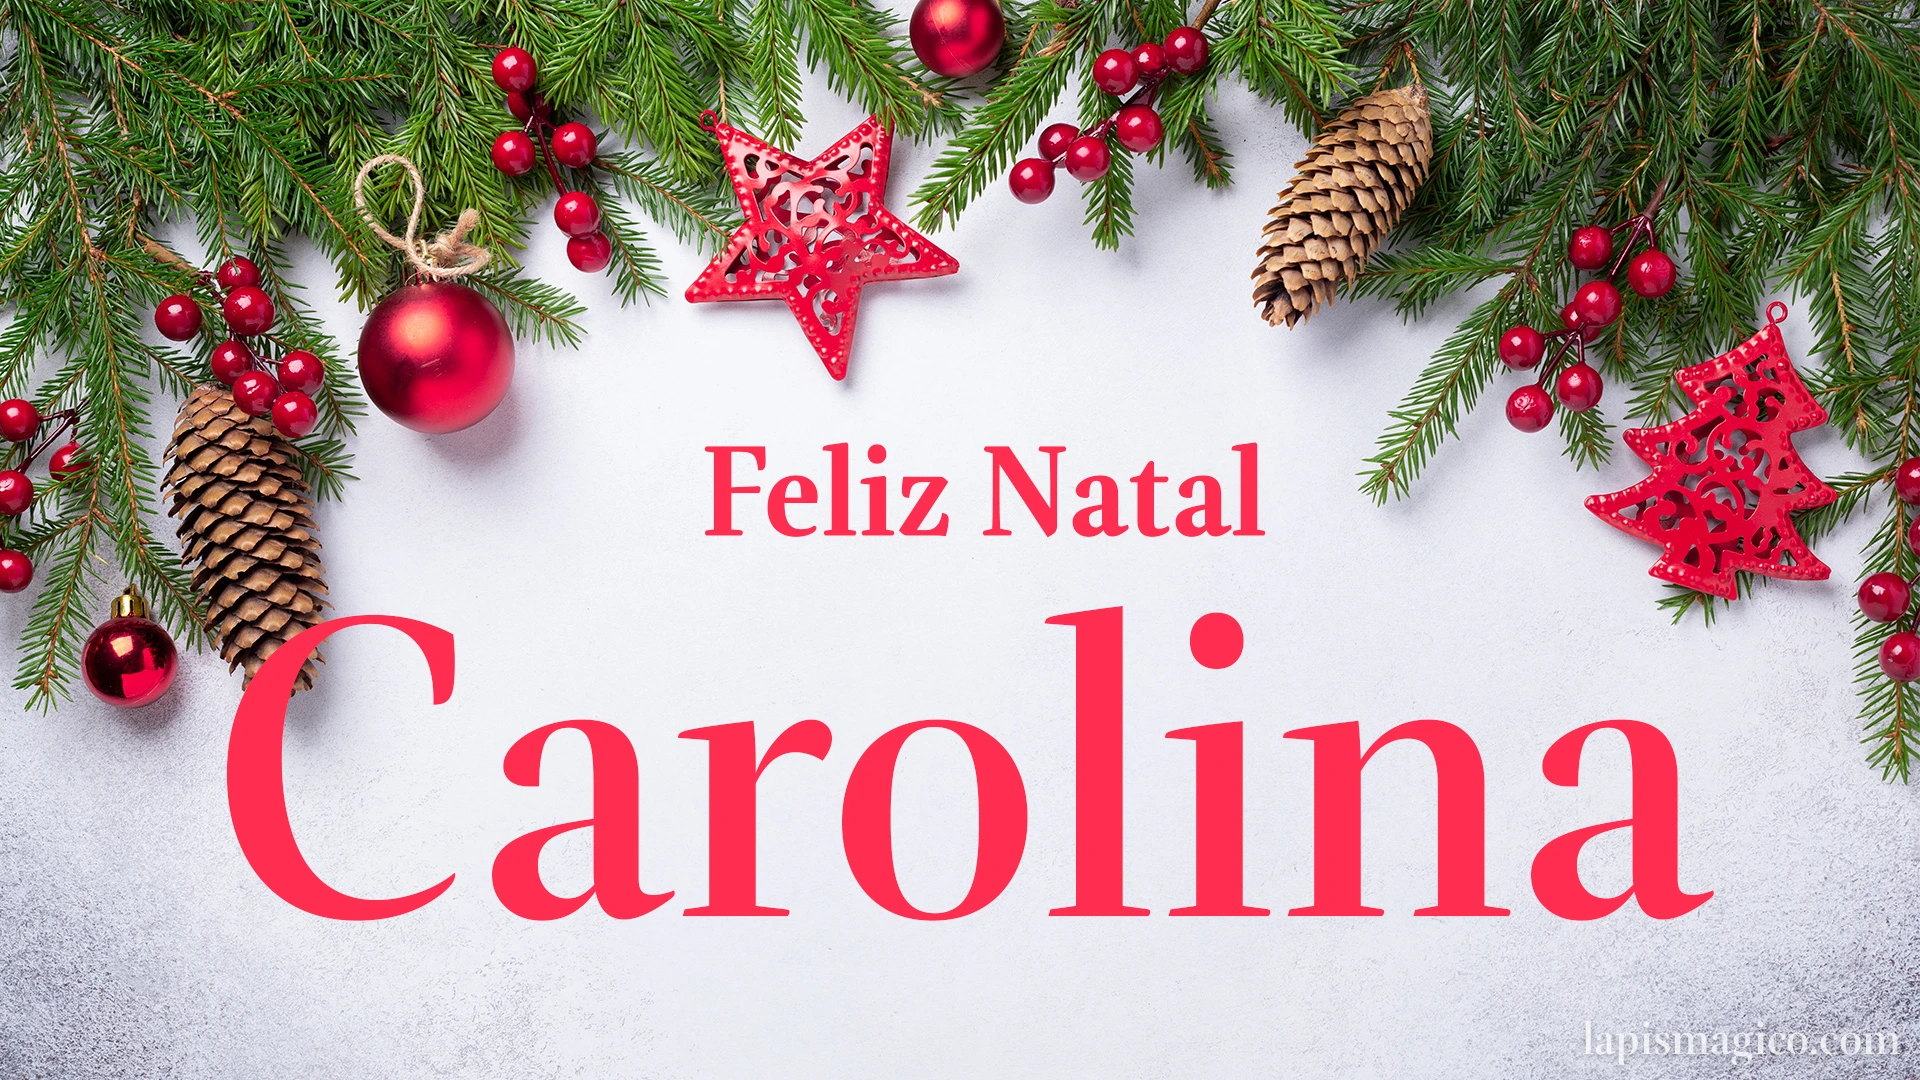 Oh Carolina, cinco postais de Feliz Natal Postal com o teu nome